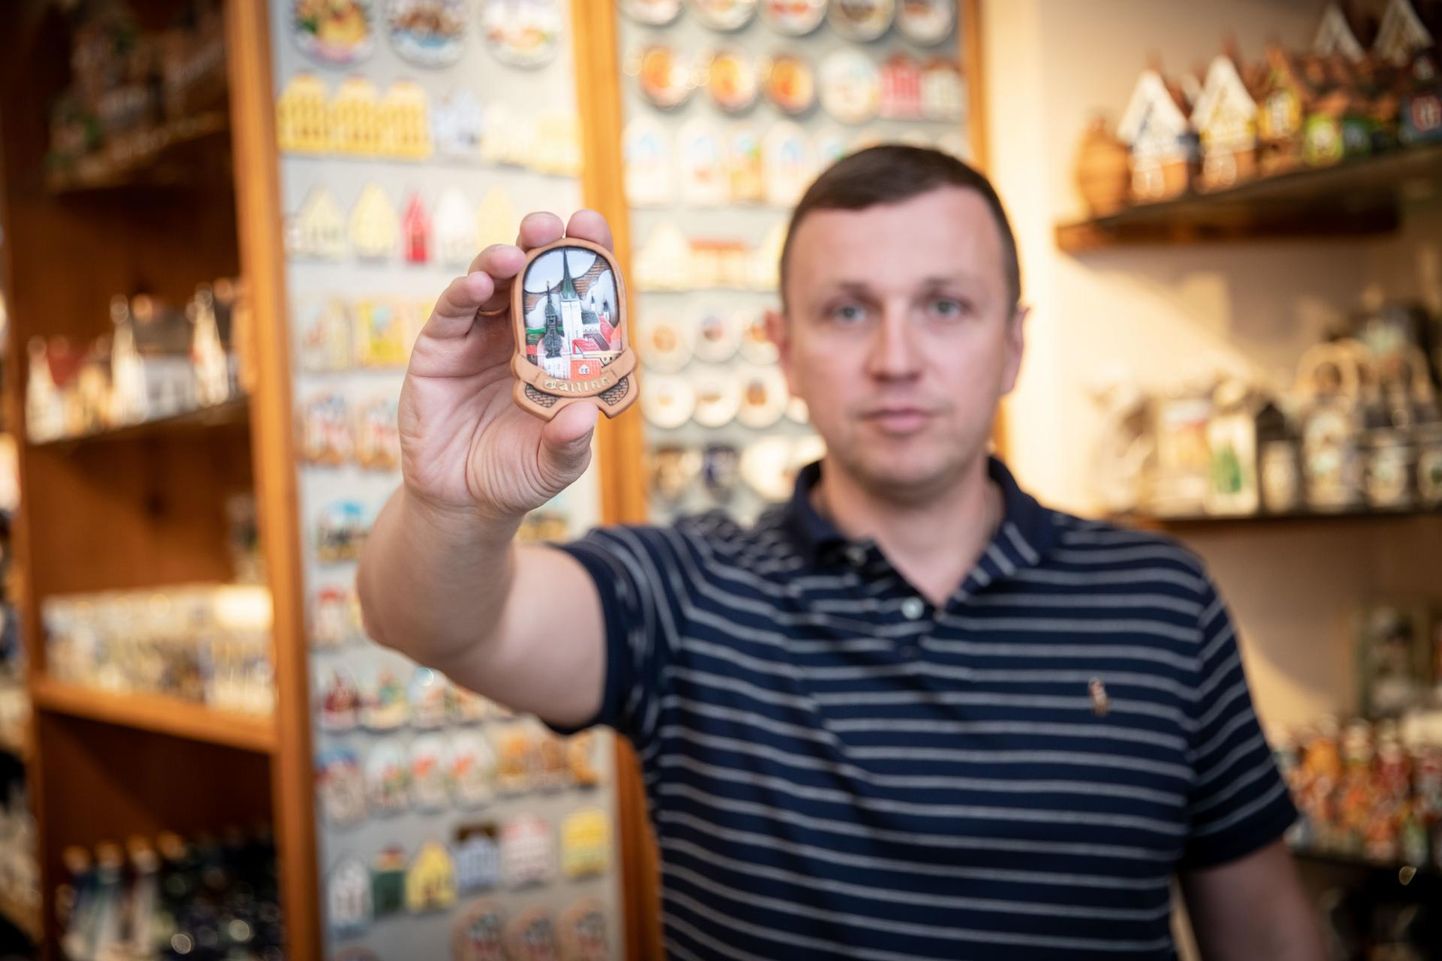 К полудню пятницы в сувернином магазине Александра Ажичакова на улице Пикк продали всего один магнитик за четыре евро. Оборот упал почти на 98 процентов.